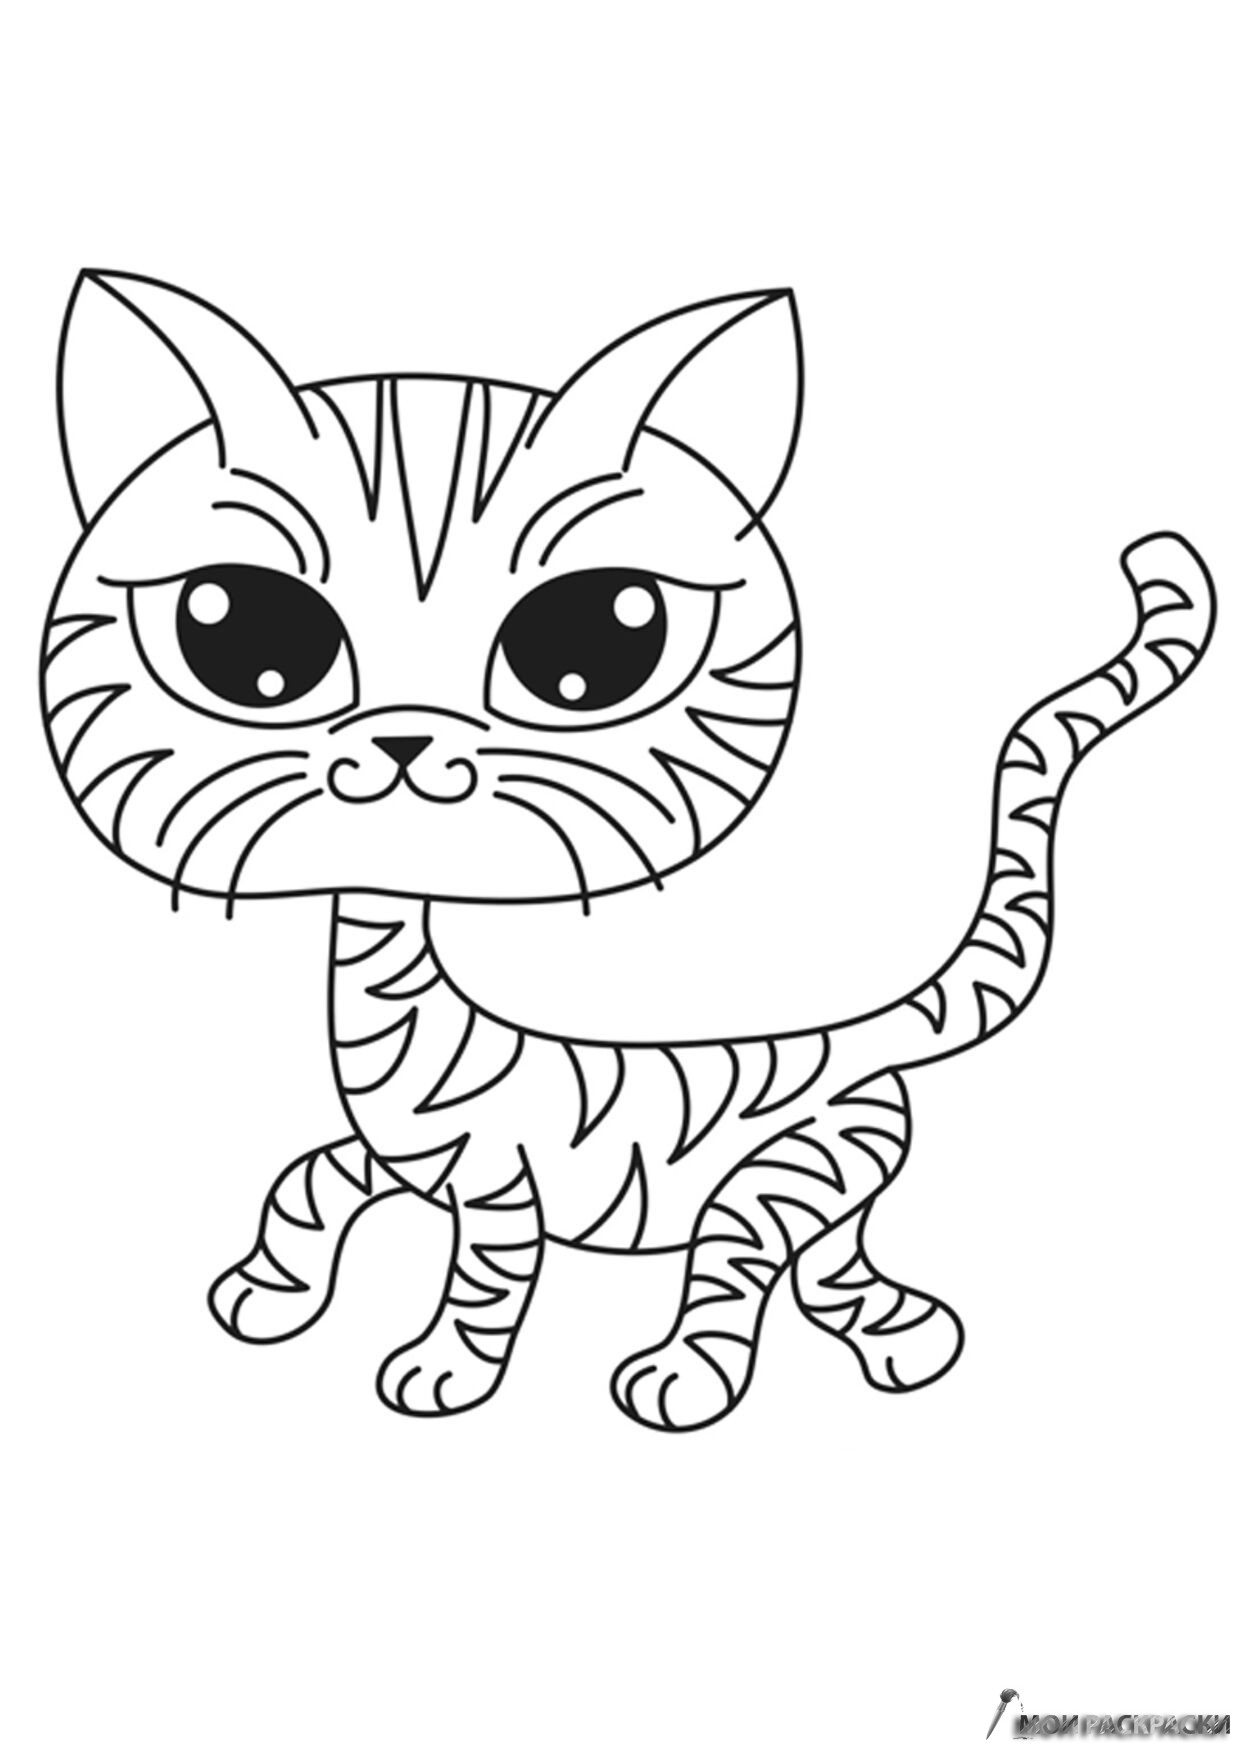 Раскраска котенок для детей 4 5 лет. Раскраска. Котики. Раскраска кот. Кошечка для раскрашивания. Котенок. Раскраска.